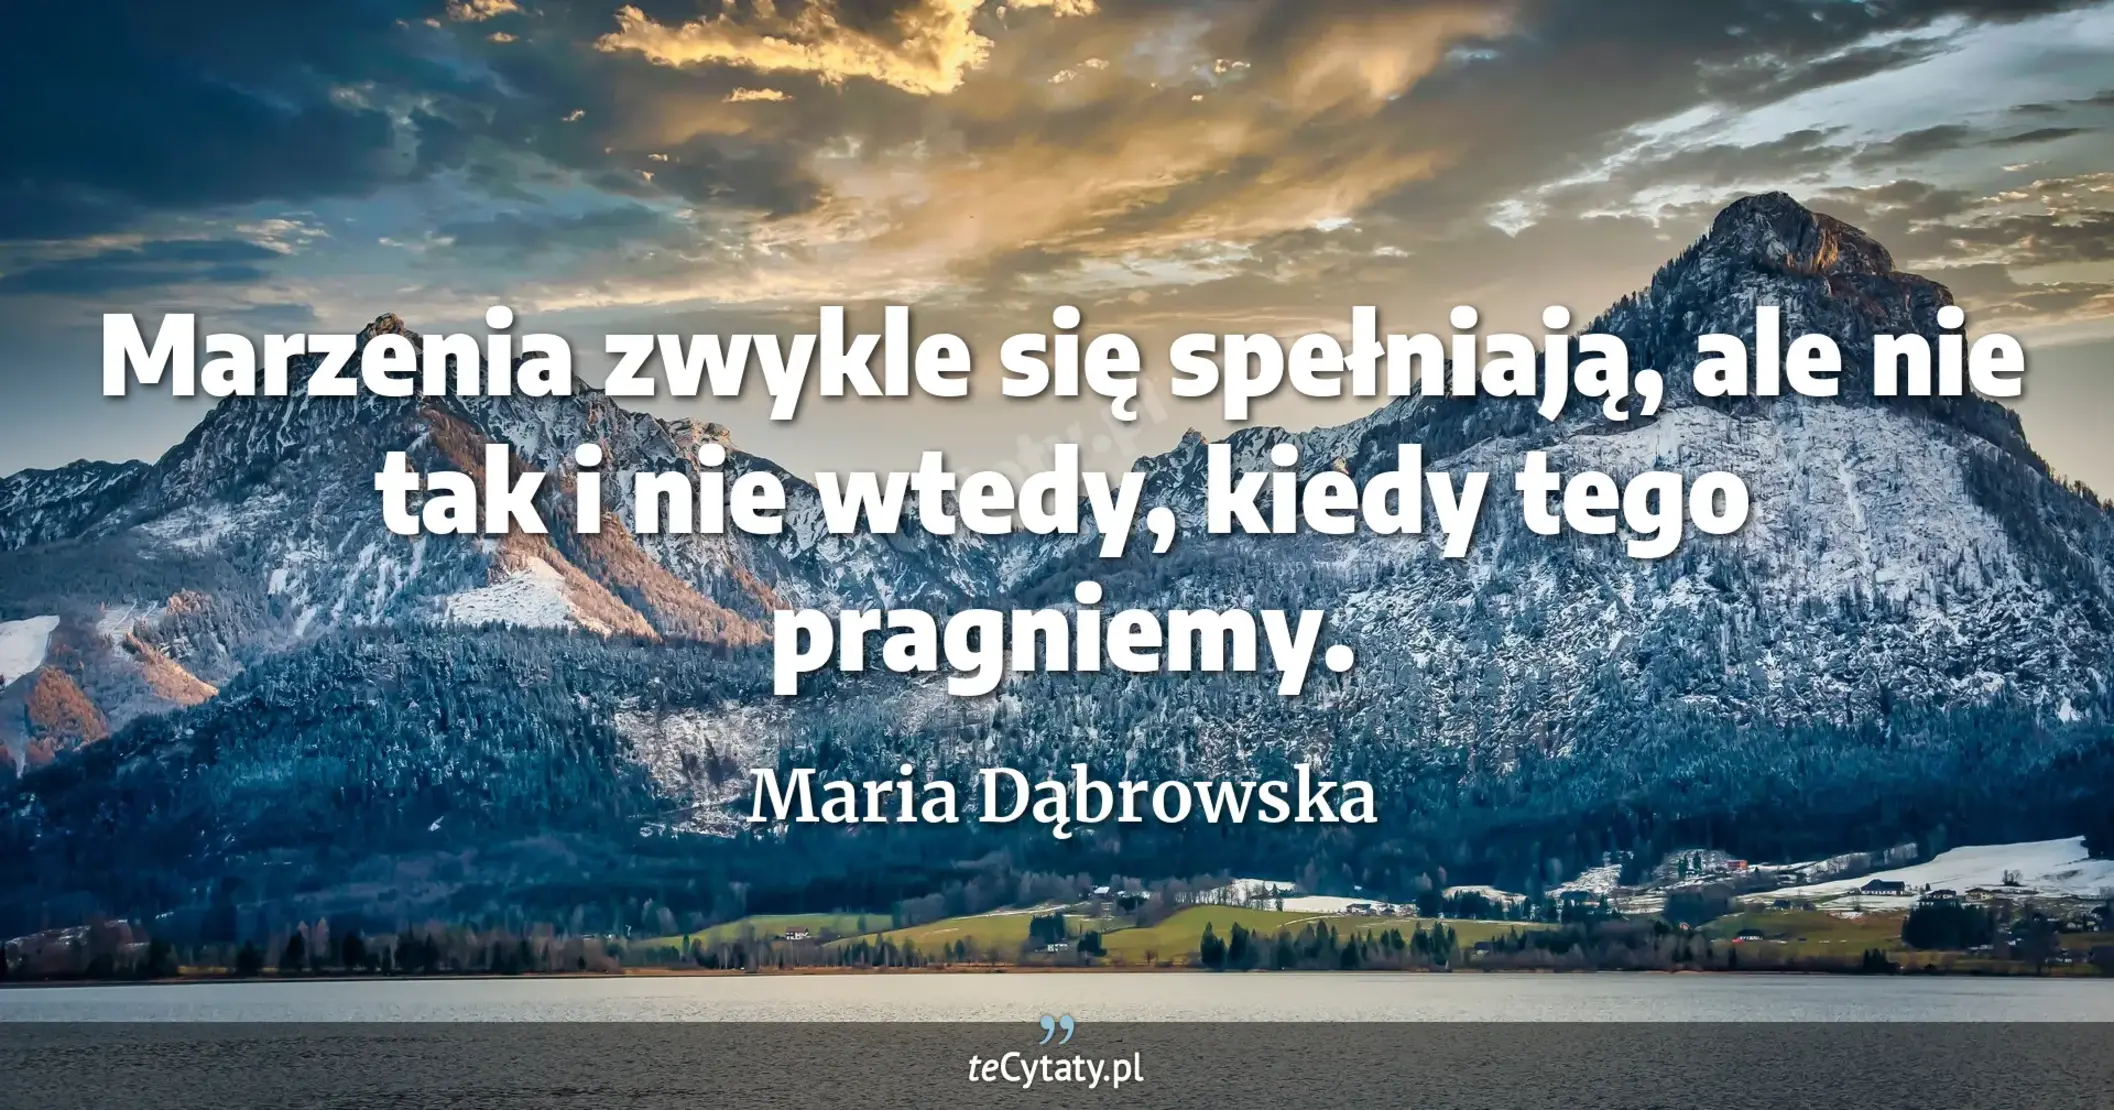 Marzenia zwykle się spełniają, ale nie tak i nie wtedy, kiedy tego pragniemy. - Maria Dąbrowska